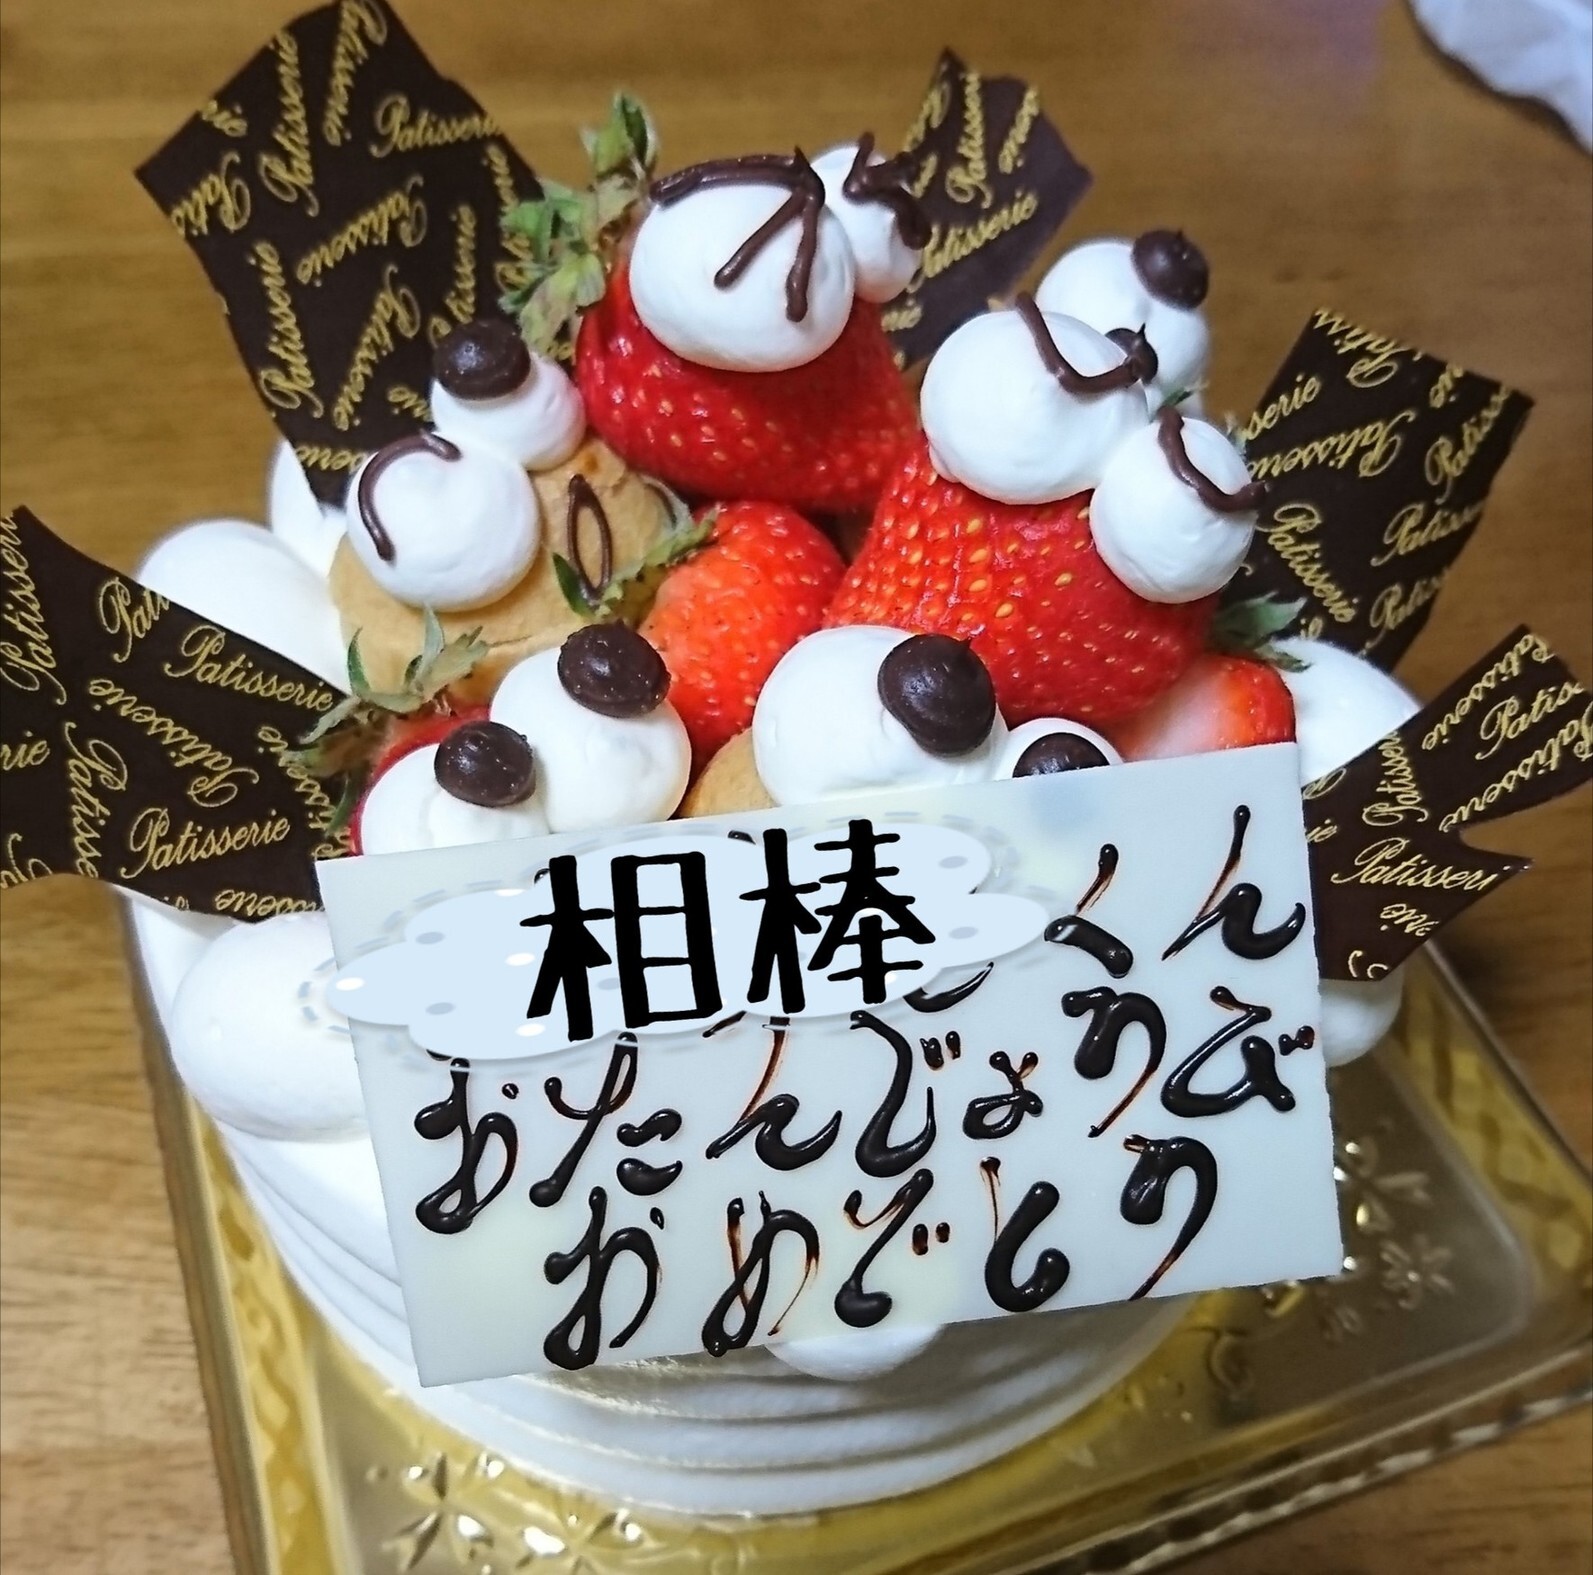 釧路の美味しいケーキ屋さん6選 誕生日や手土産におすすめなのはコレ Shiori